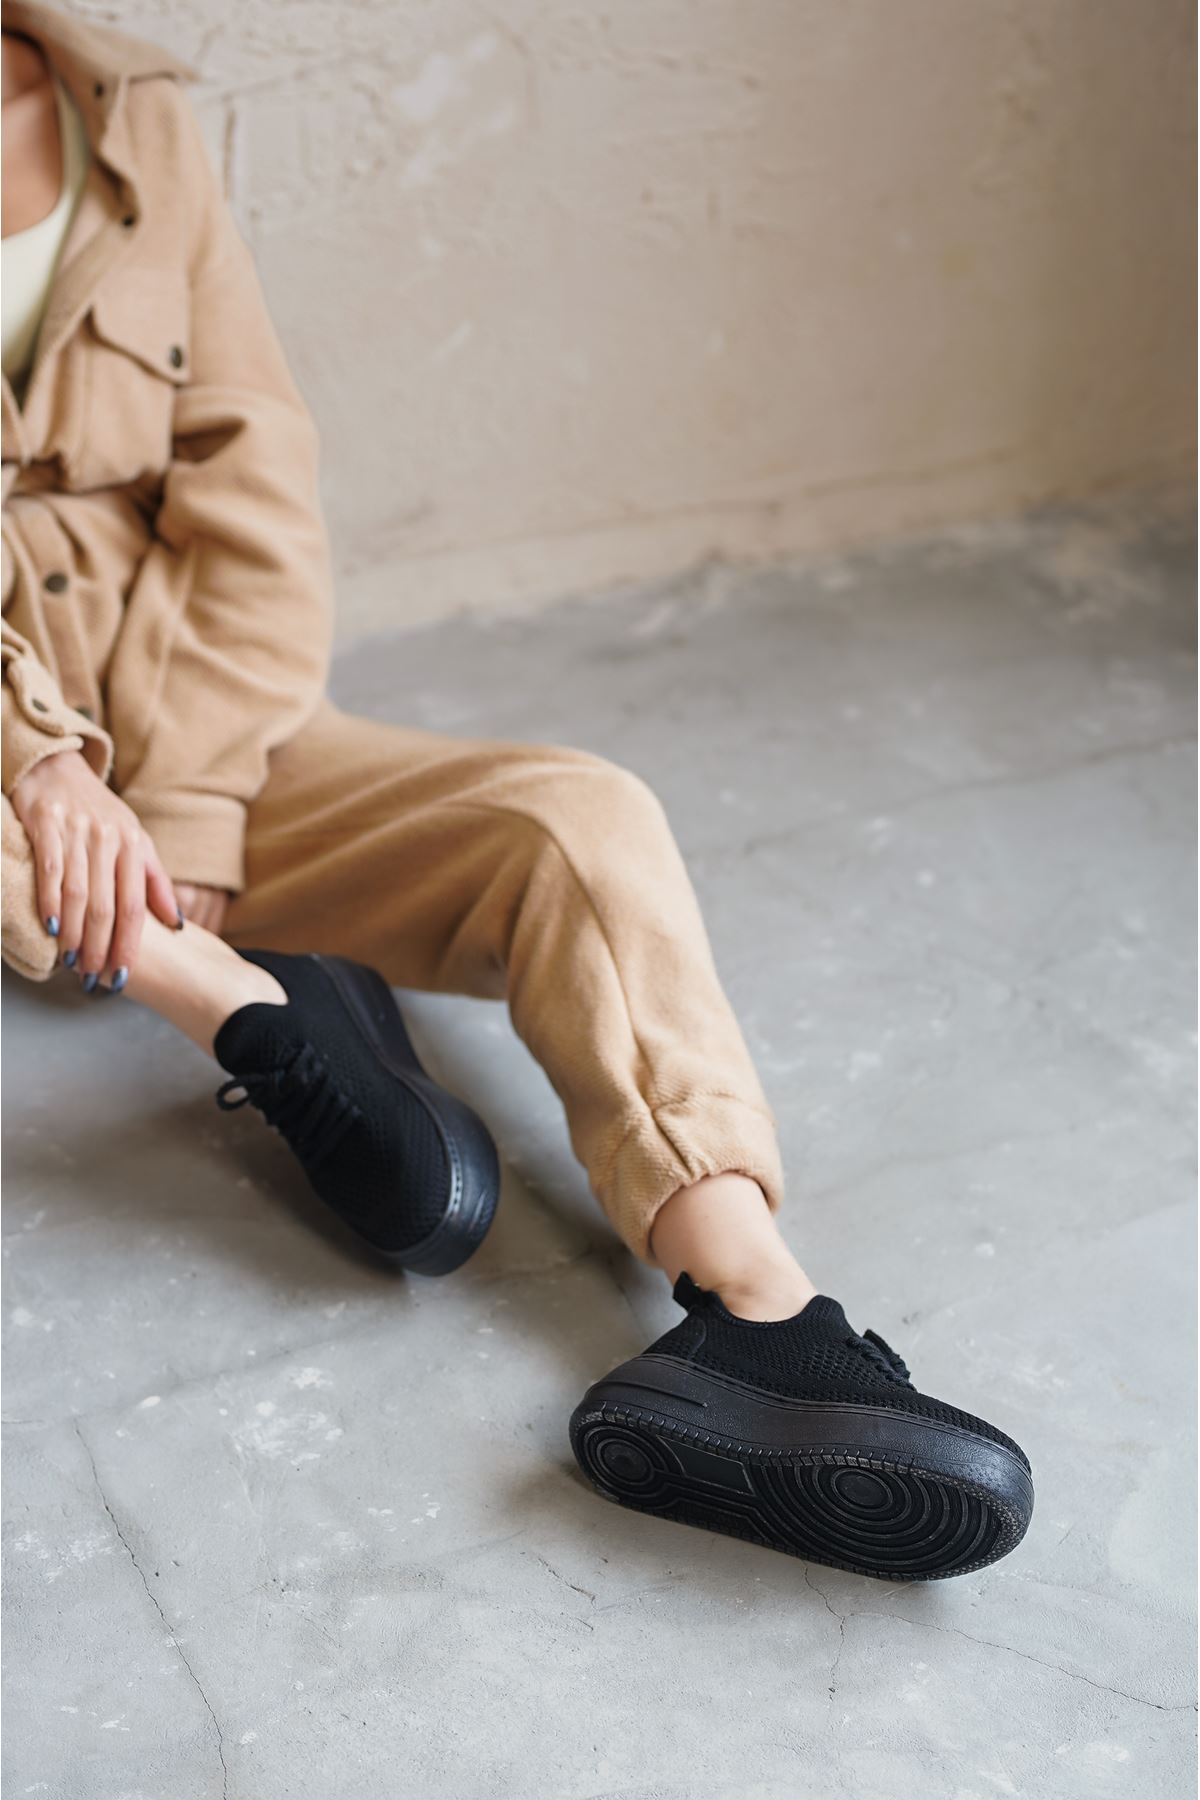 Kadın Joli Triko Bağcıklı Spor Ayakkabı - Siyah